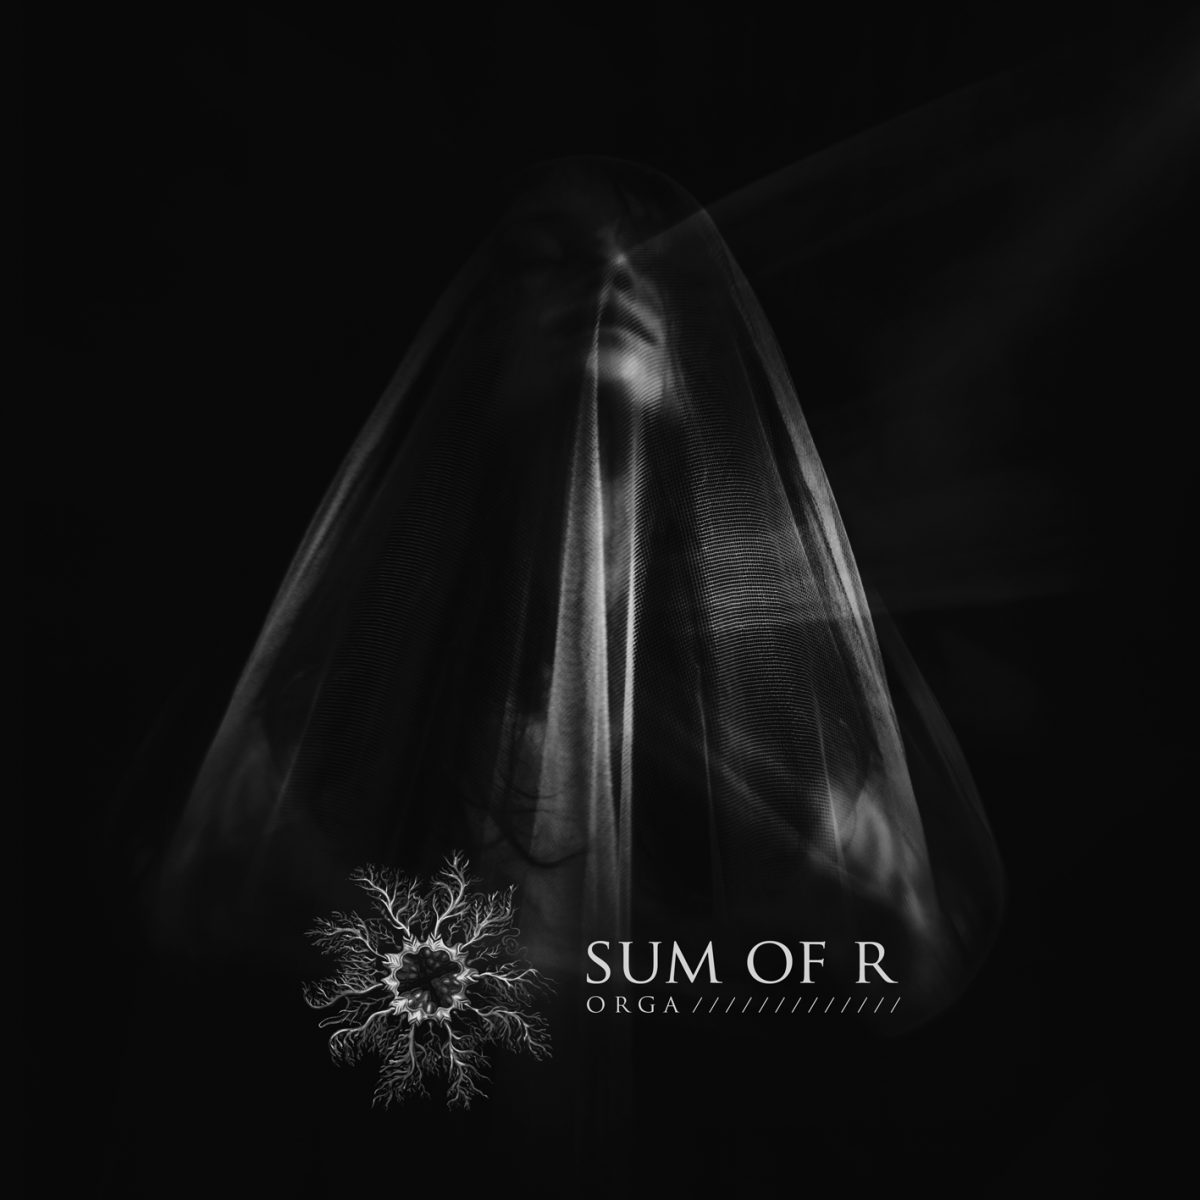 Sum of R